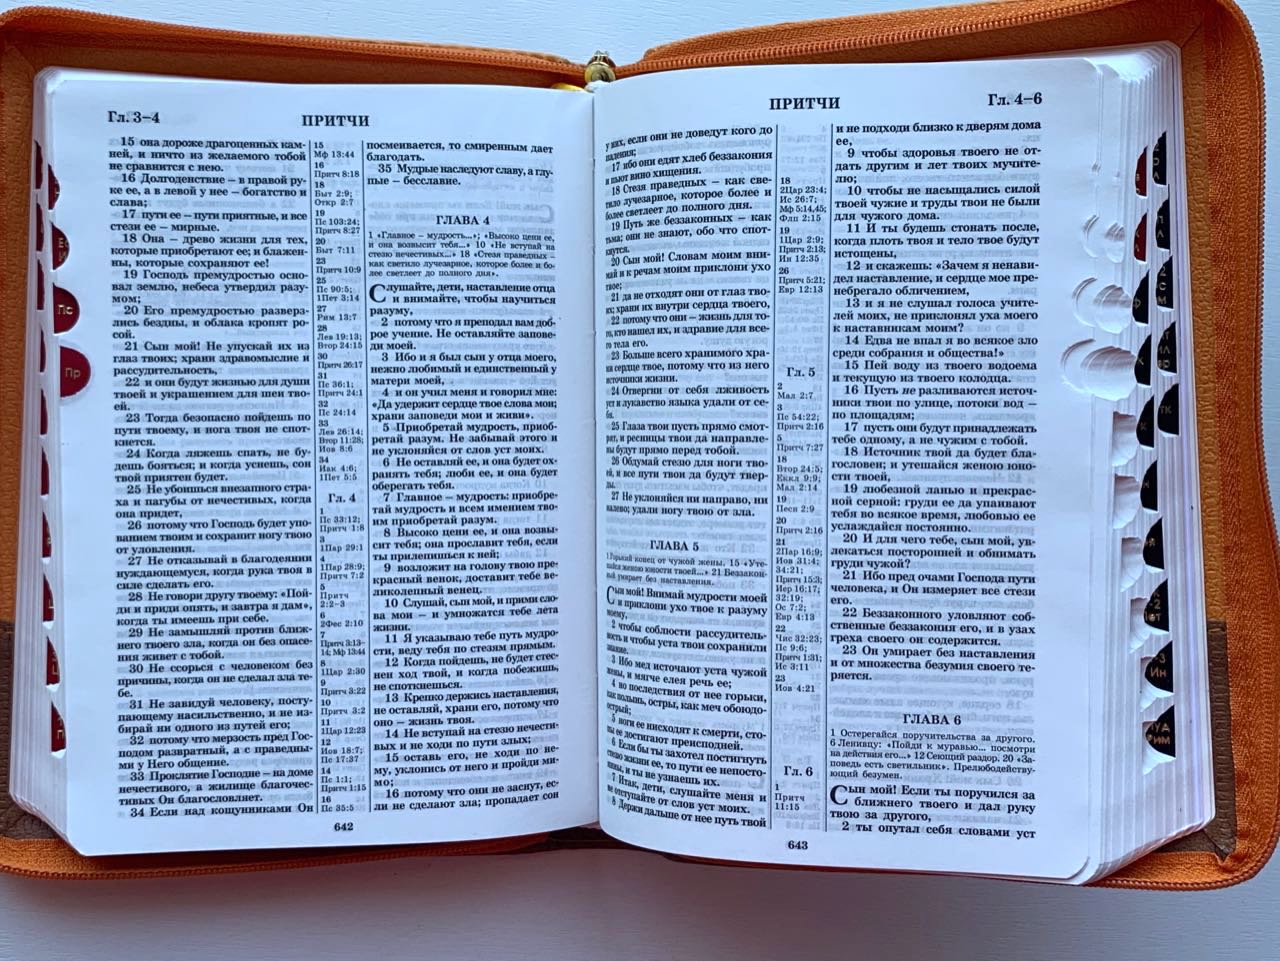 БИБЛИЯ 046DTzti формат, цвет светло-коричневый/бежевый полукругом, переплет из искусственной кожи на молнии с индексами, надпись золотом "Библия", средний формат, 132*182 мм, цветные карты, шрифт 12 кегель